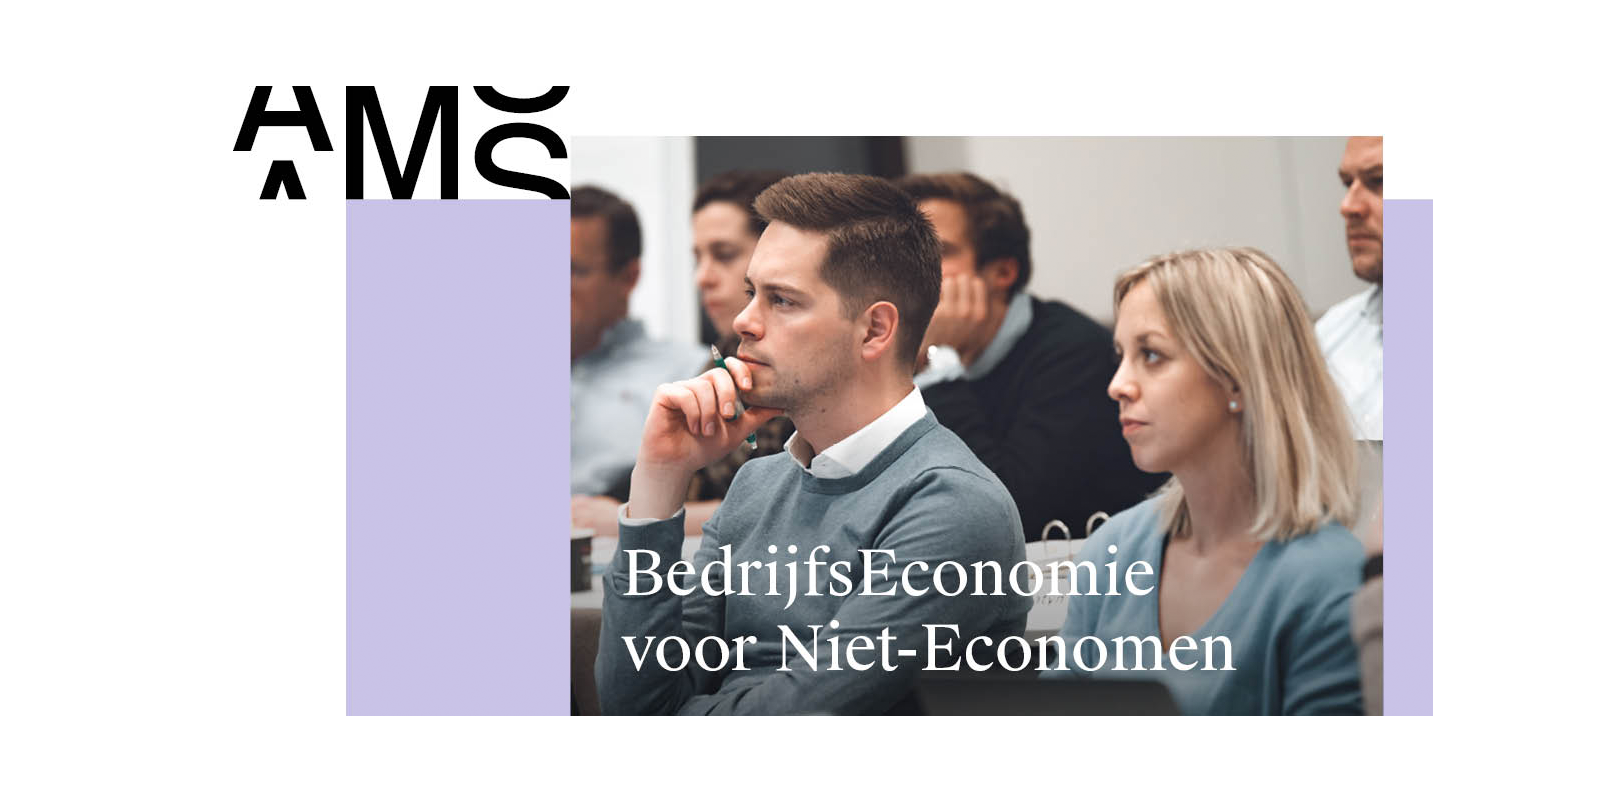 Bedrijfseconomie voor Niet-Economisten - AMS